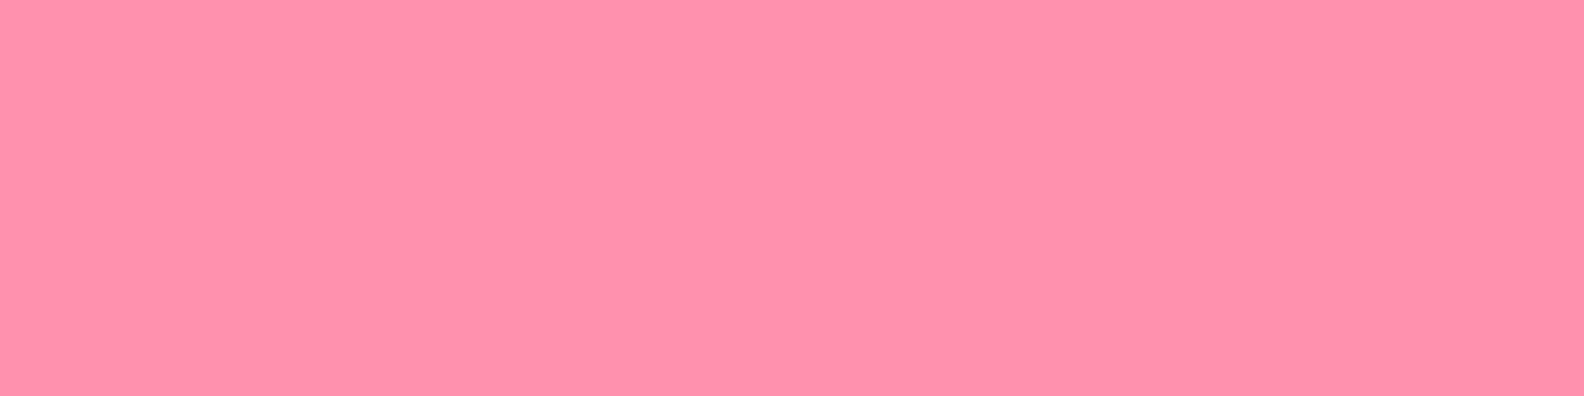 1584x396 Baker-Miller Pink Solid Color Background